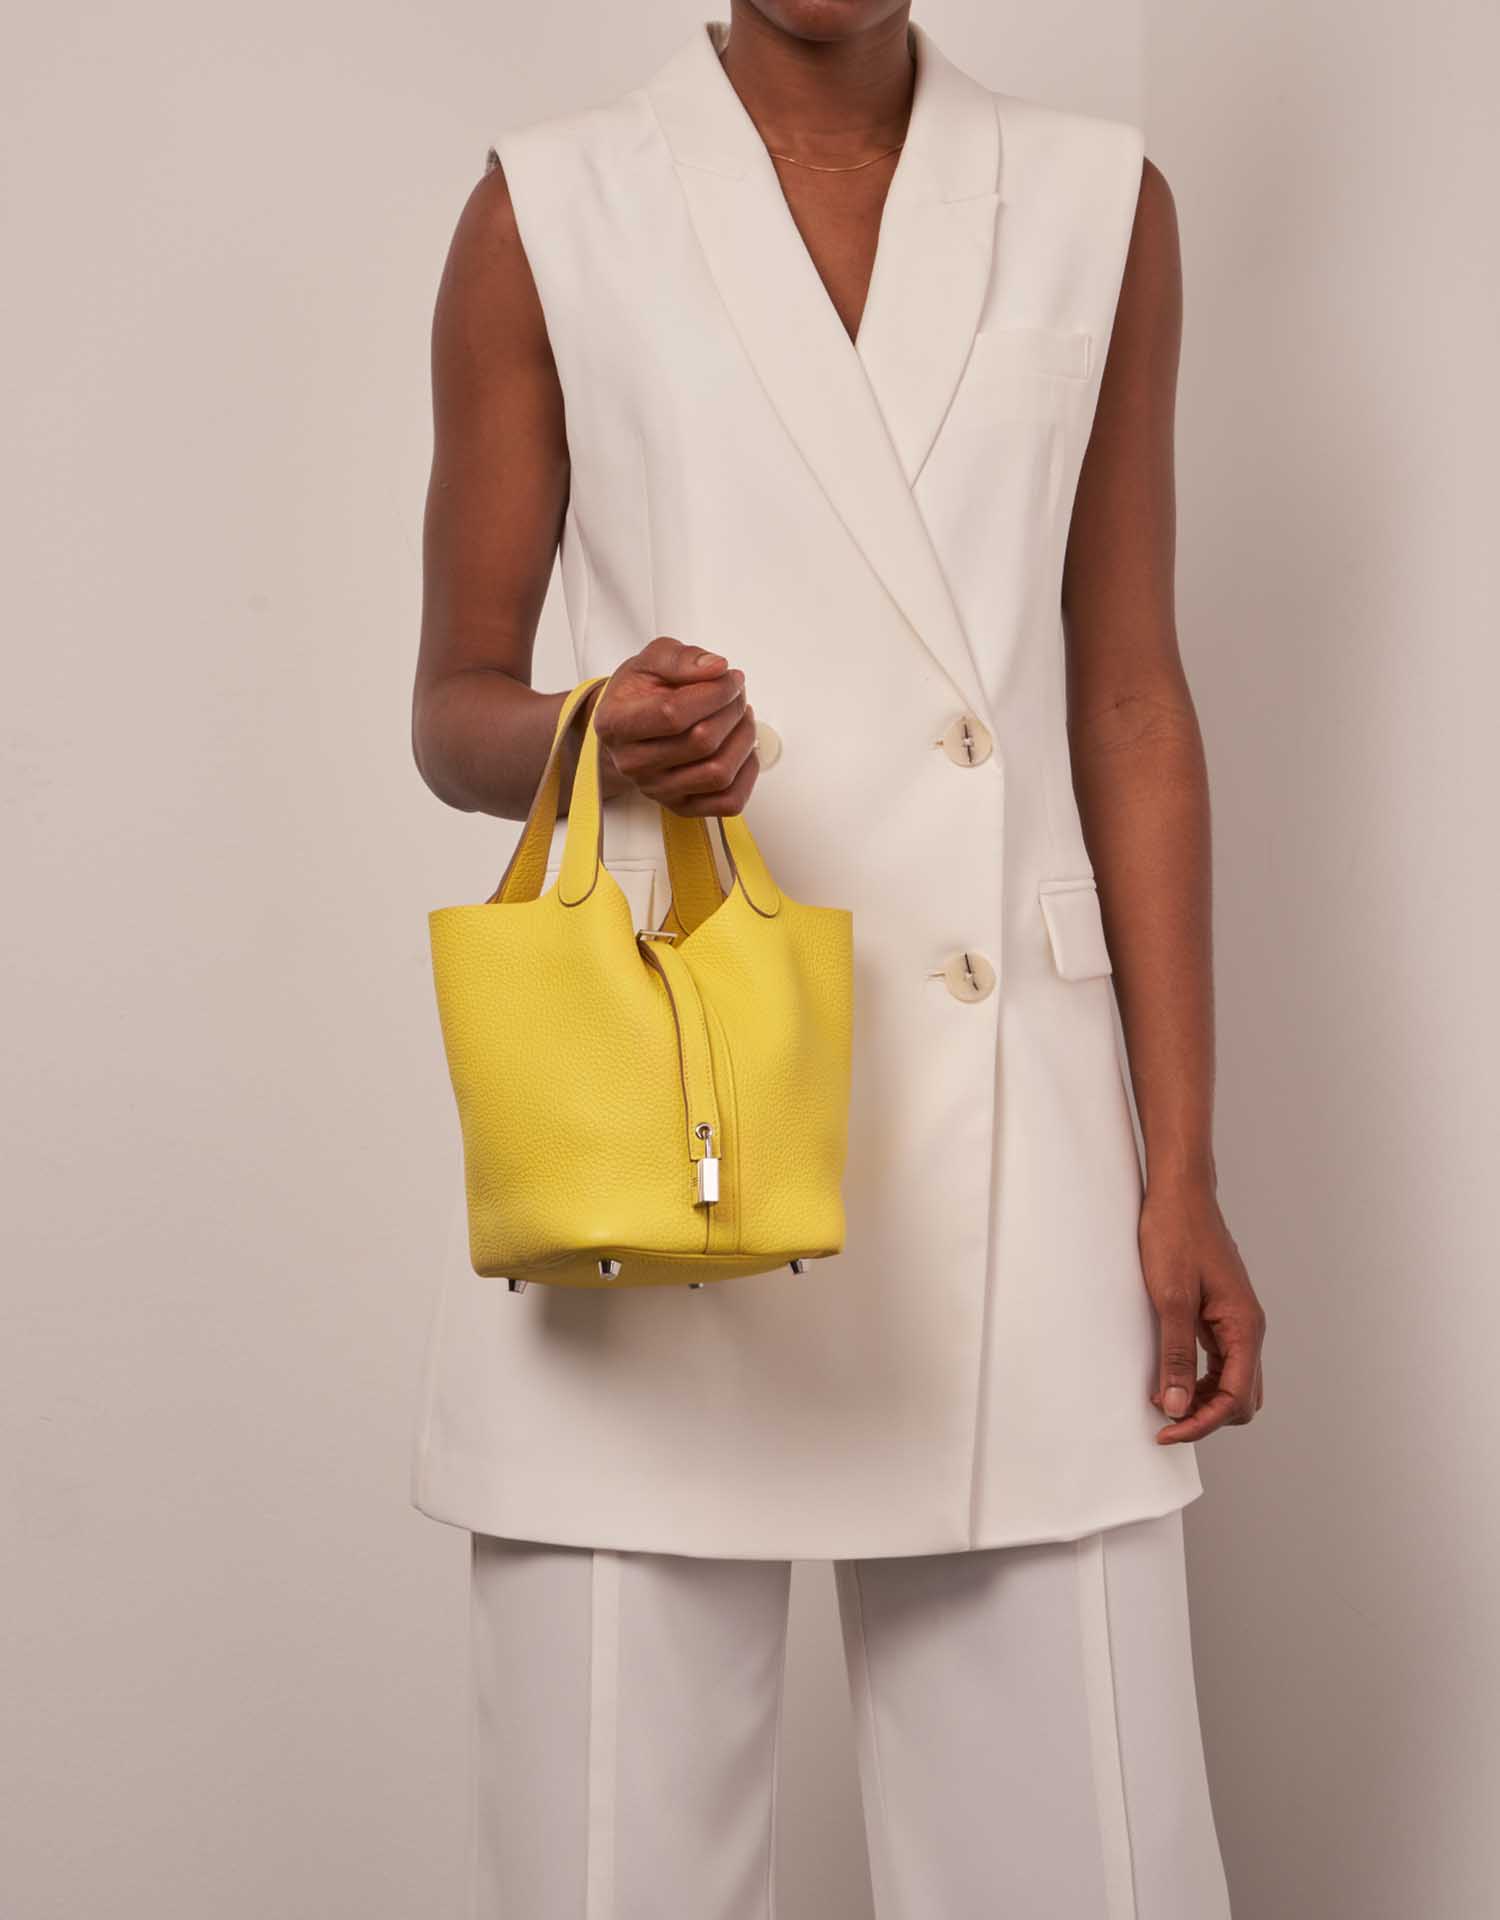 Hermès Picotin 18 Lime Größen Getragen | Verkaufen Sie Ihre Designer-Tasche auf Saclab.com